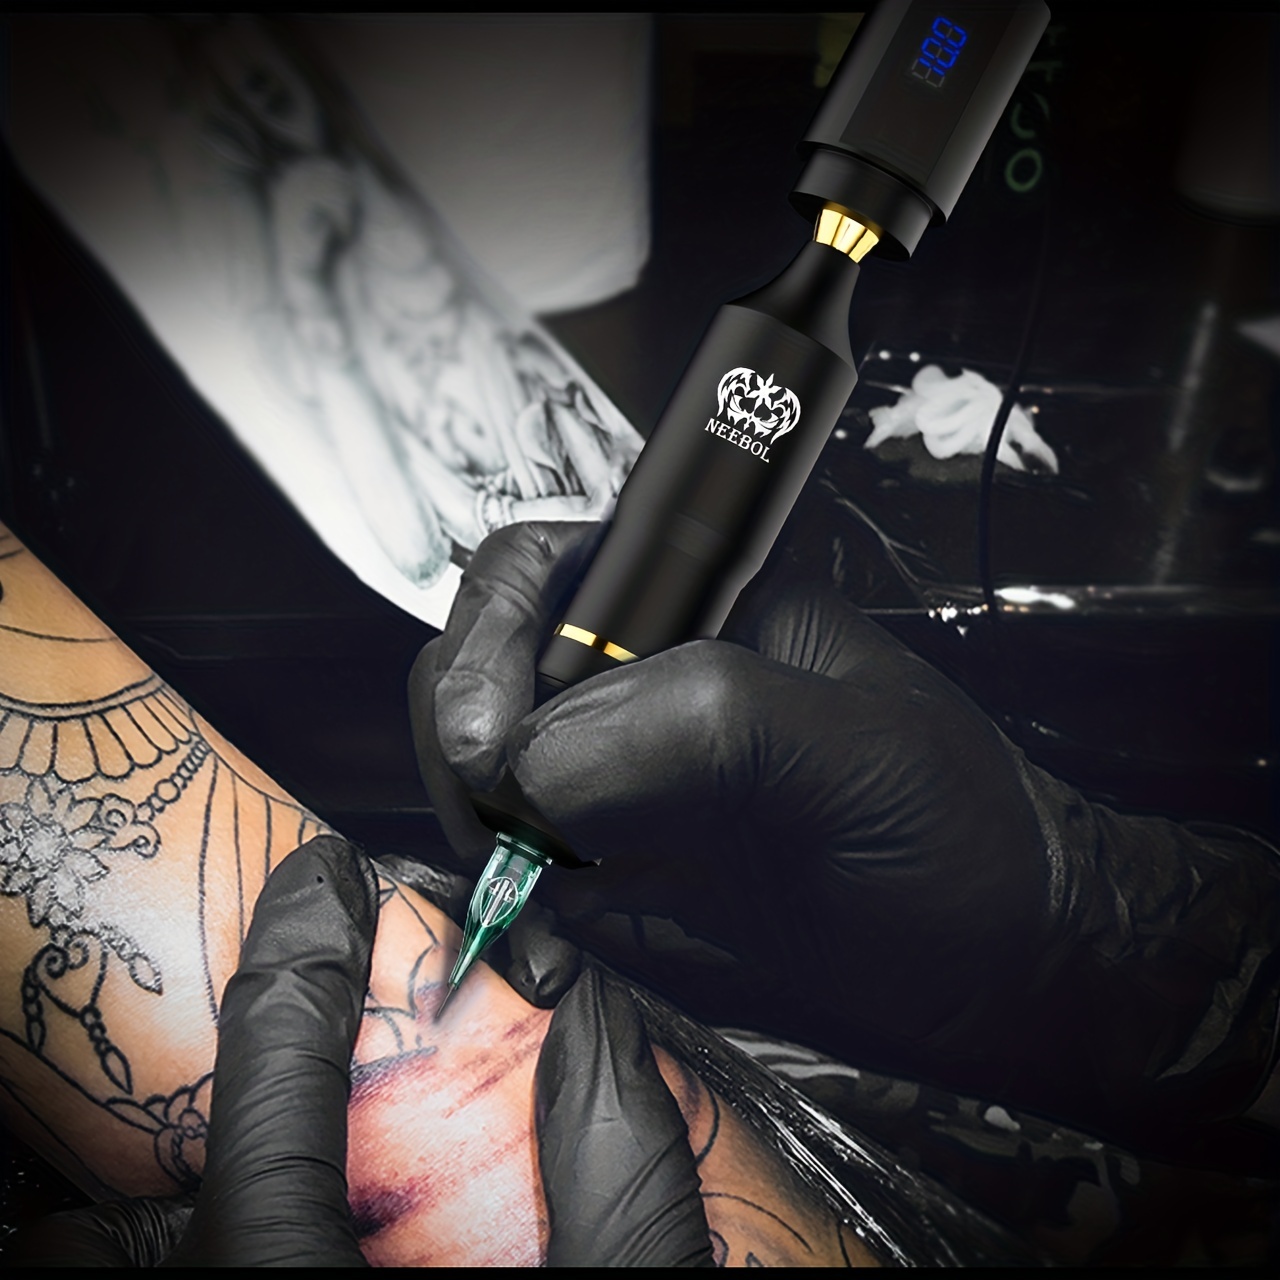 Neebol Wireless Tattoo Kit Tattoo Pen Secant Fog Tattoo Machine 1300mah Led  Cordless Tattoo Power Supply Professionals Tattoo Artists Beginners, Save  Clearance Deals